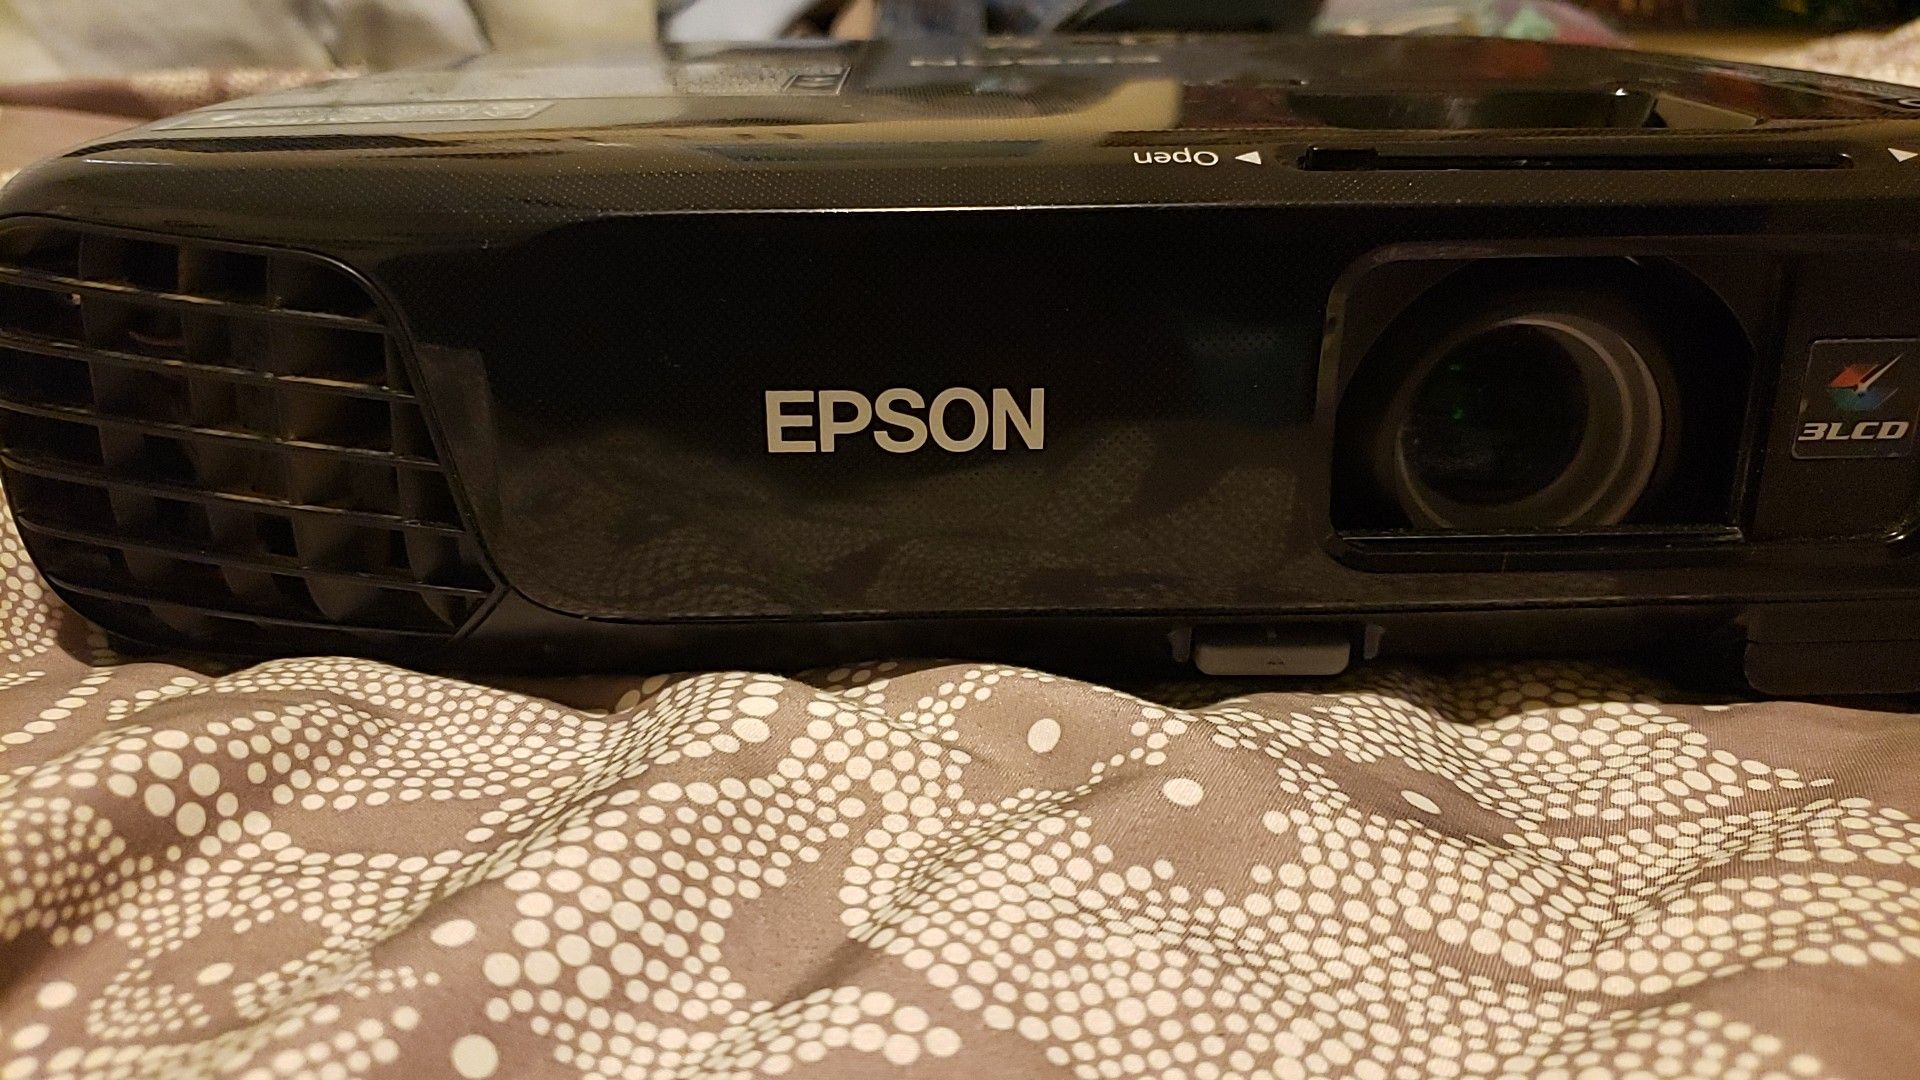 Epson EX5220 3,000 Lumen 1080p